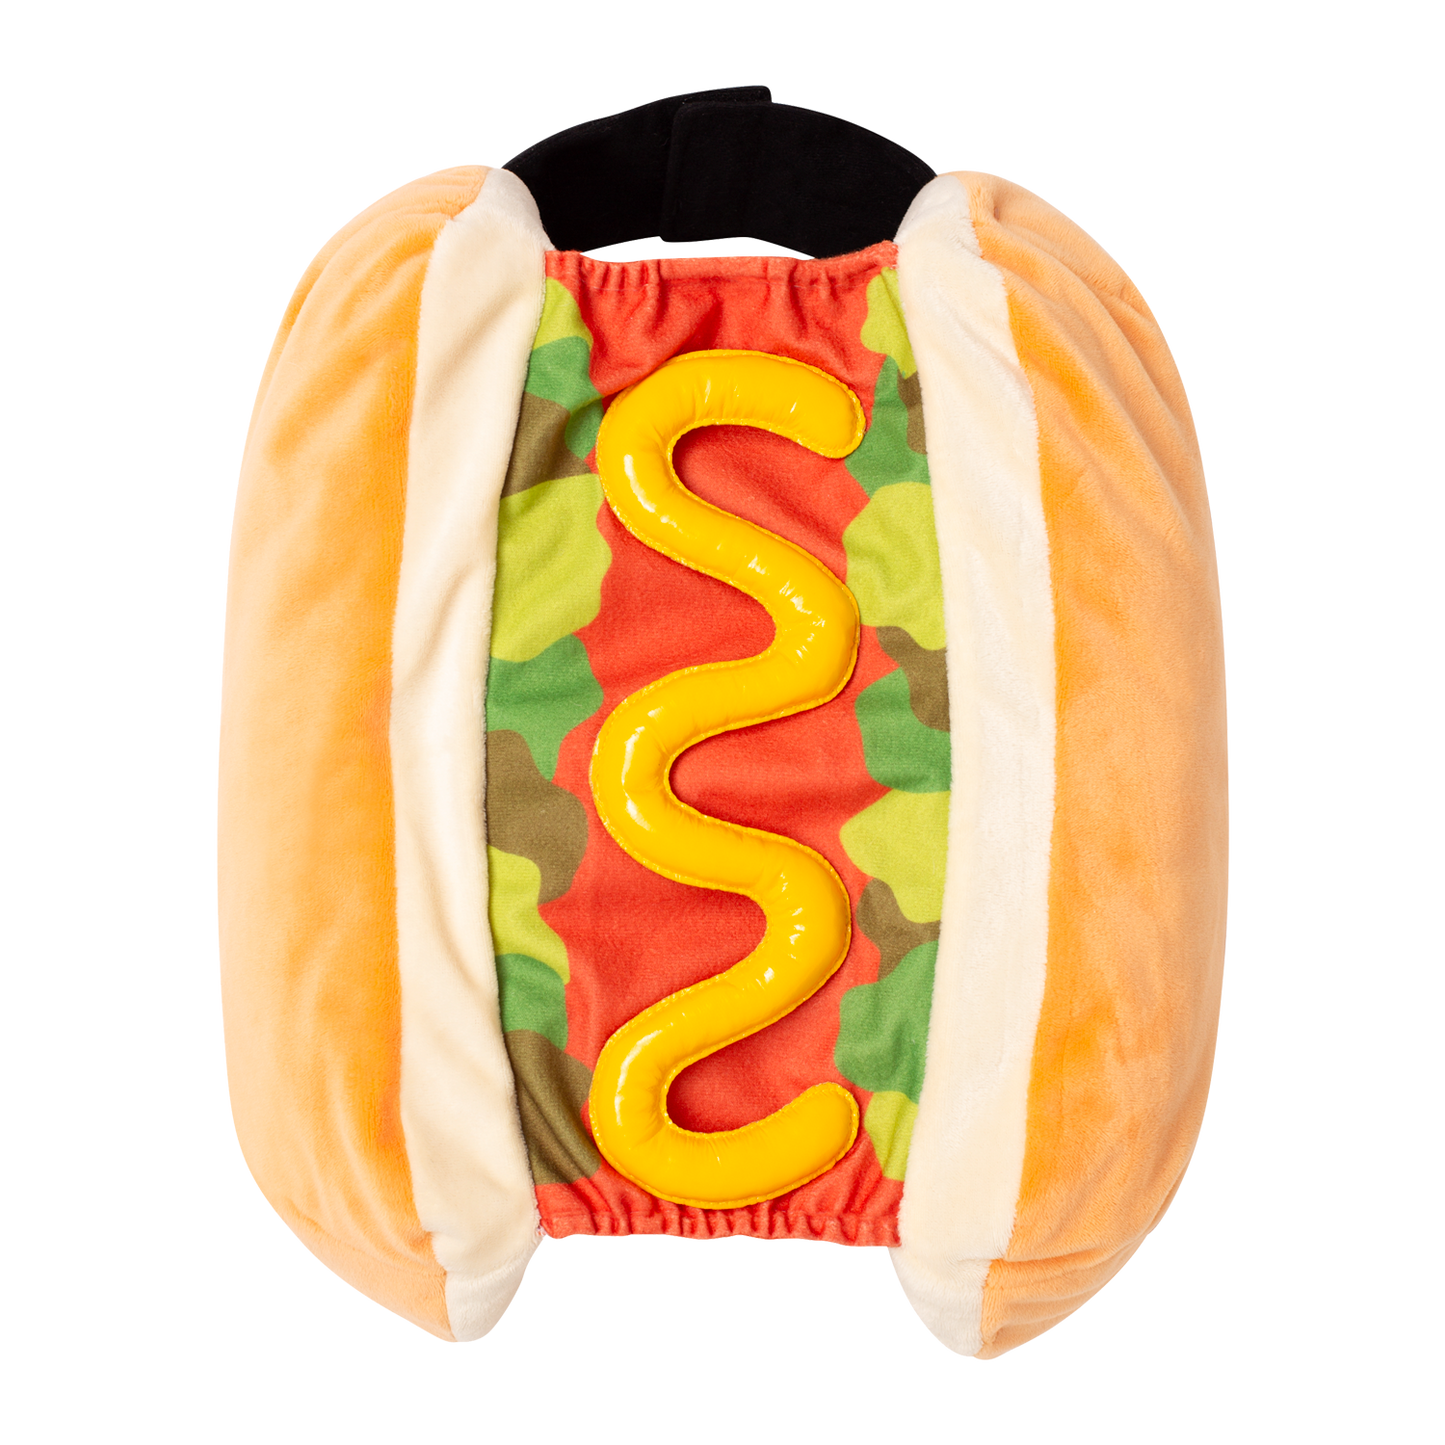 The Frankfurter Hot Dog Pet Costume